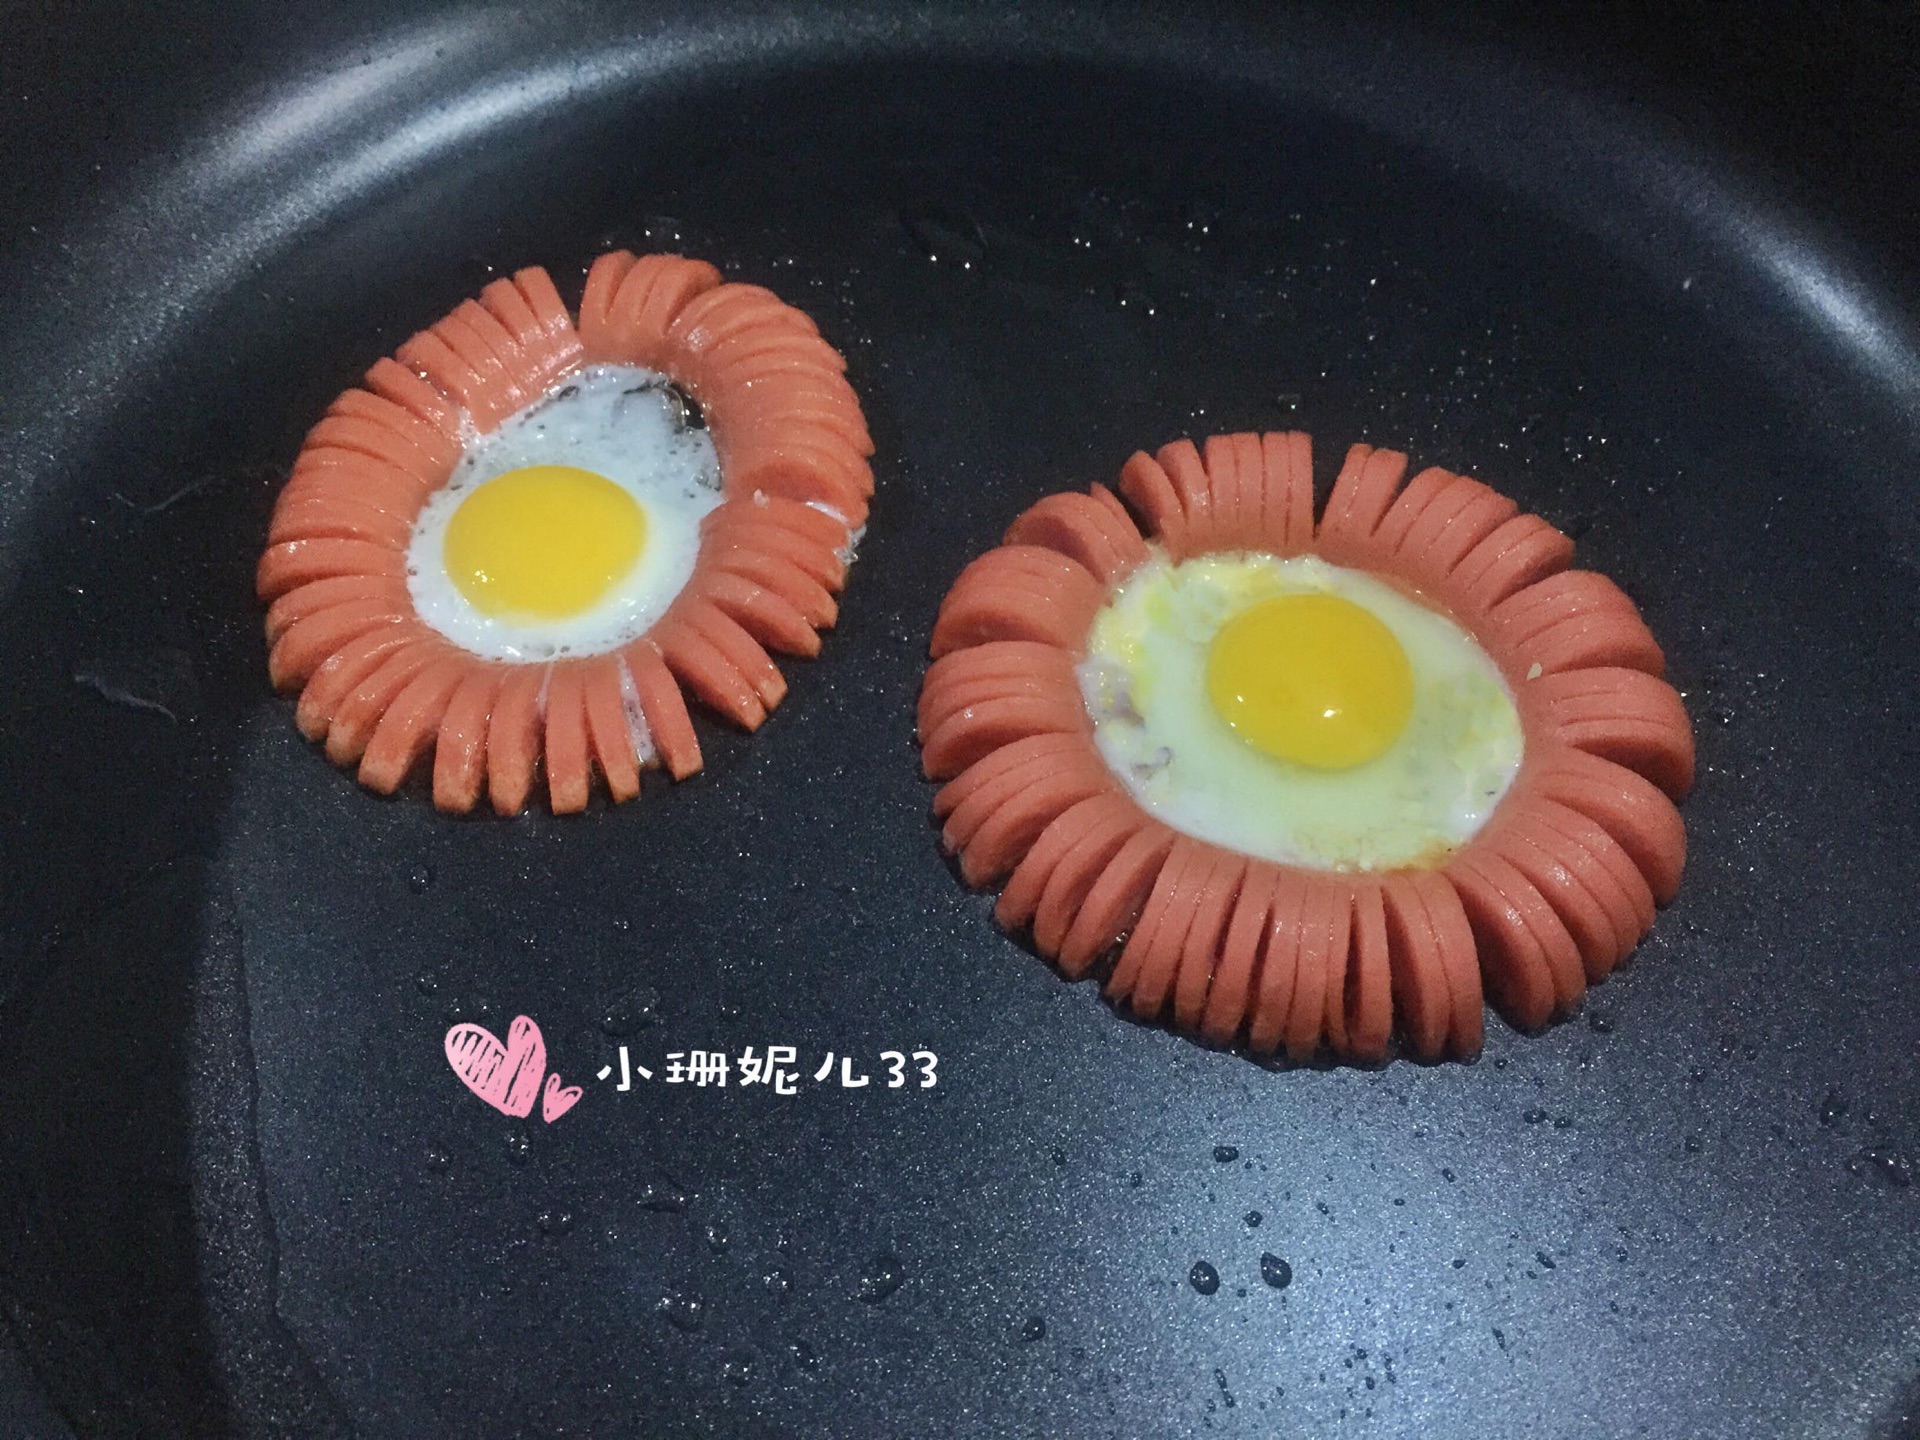 火腿太阳蛋—— 火腿肠煎蛋(内附心形煎蛋的做法)